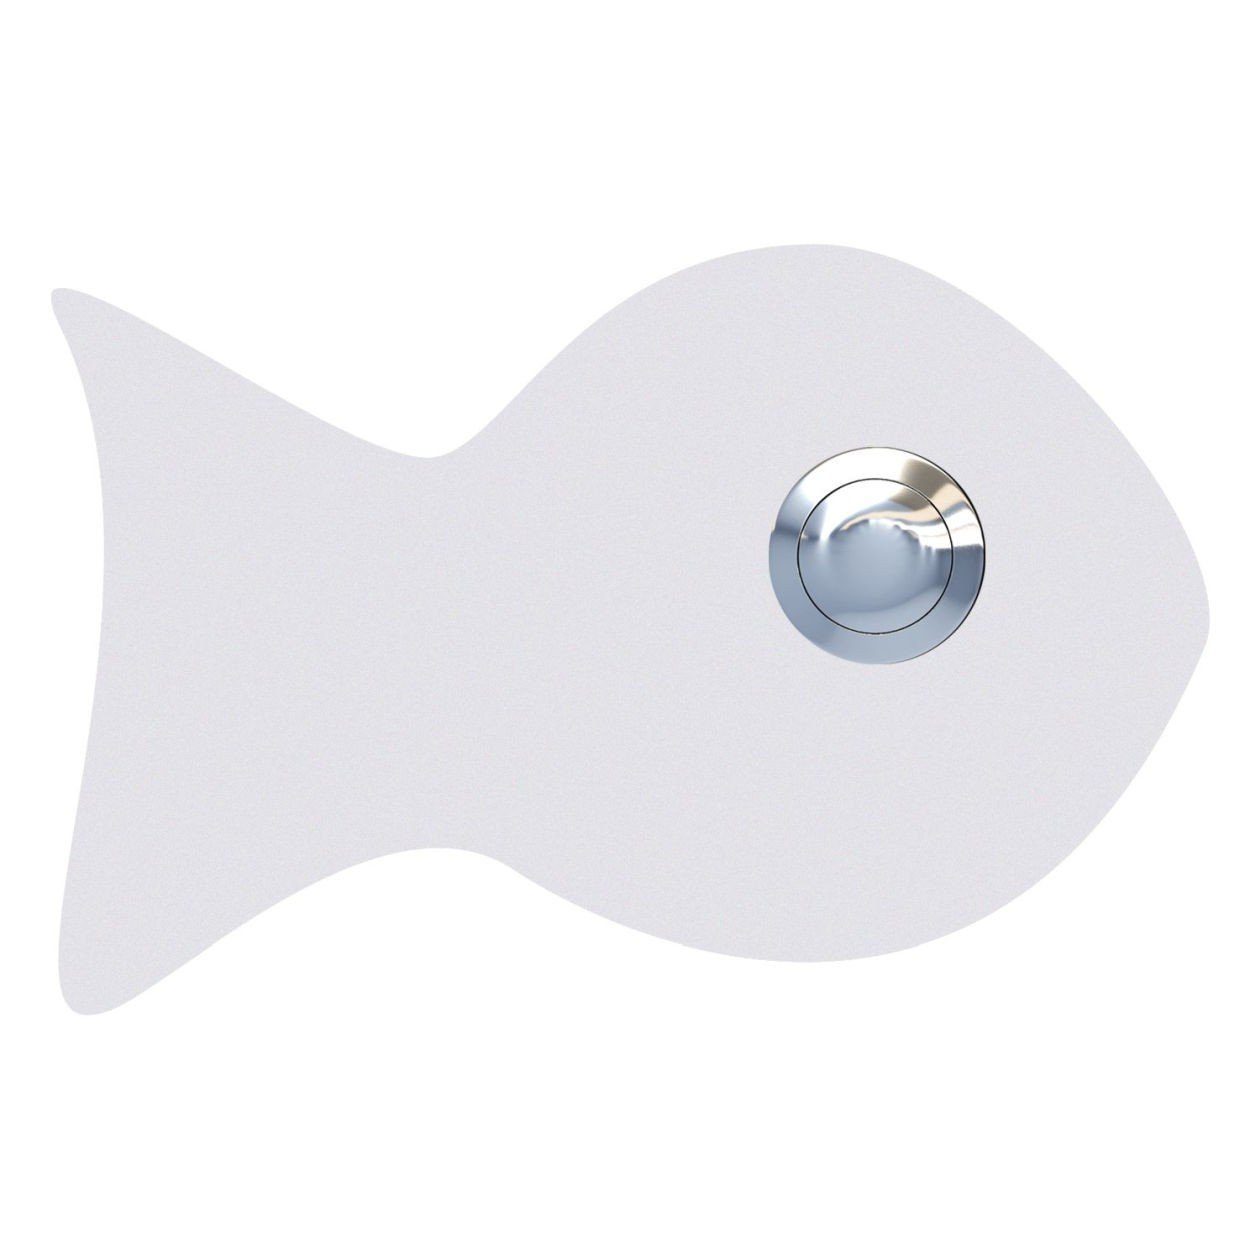 Bravios Briefkasten Klingeltaster Fisch Weiß